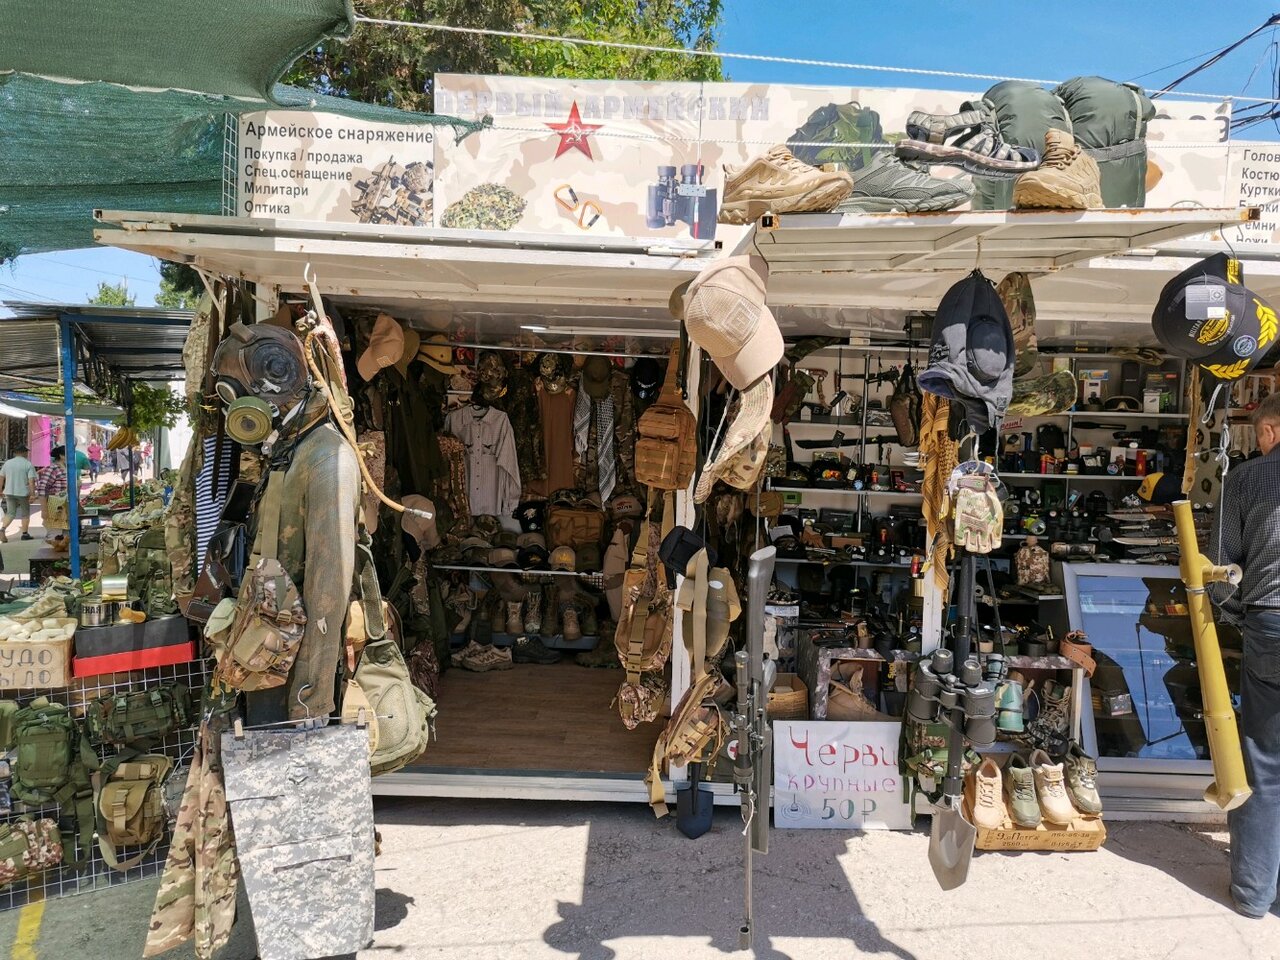 Ассортимент товаров магазина экипировки Military Foem Shop на Октябрьской Революции в Севастополе